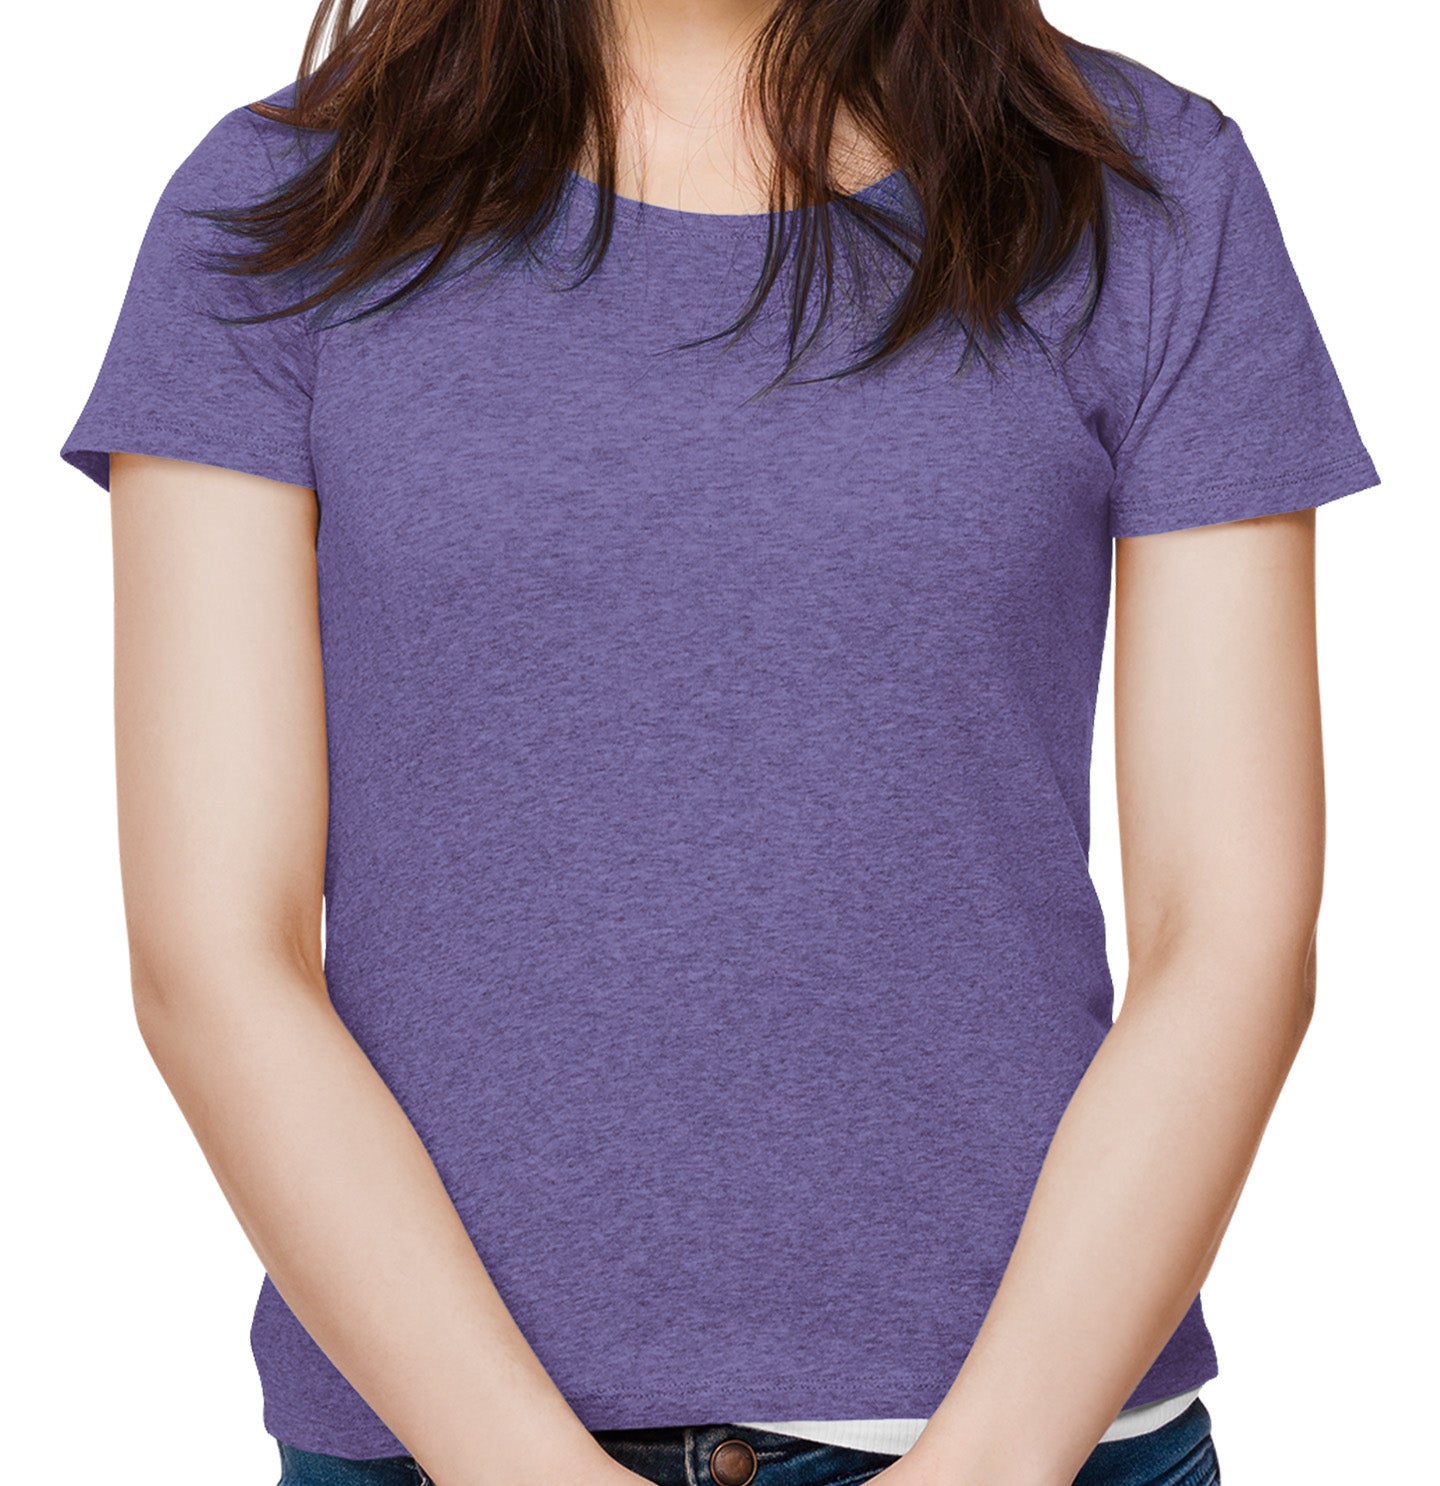 Golden Mom Illustration - Personalized Custom Women's Tri-Blend T-Shirt